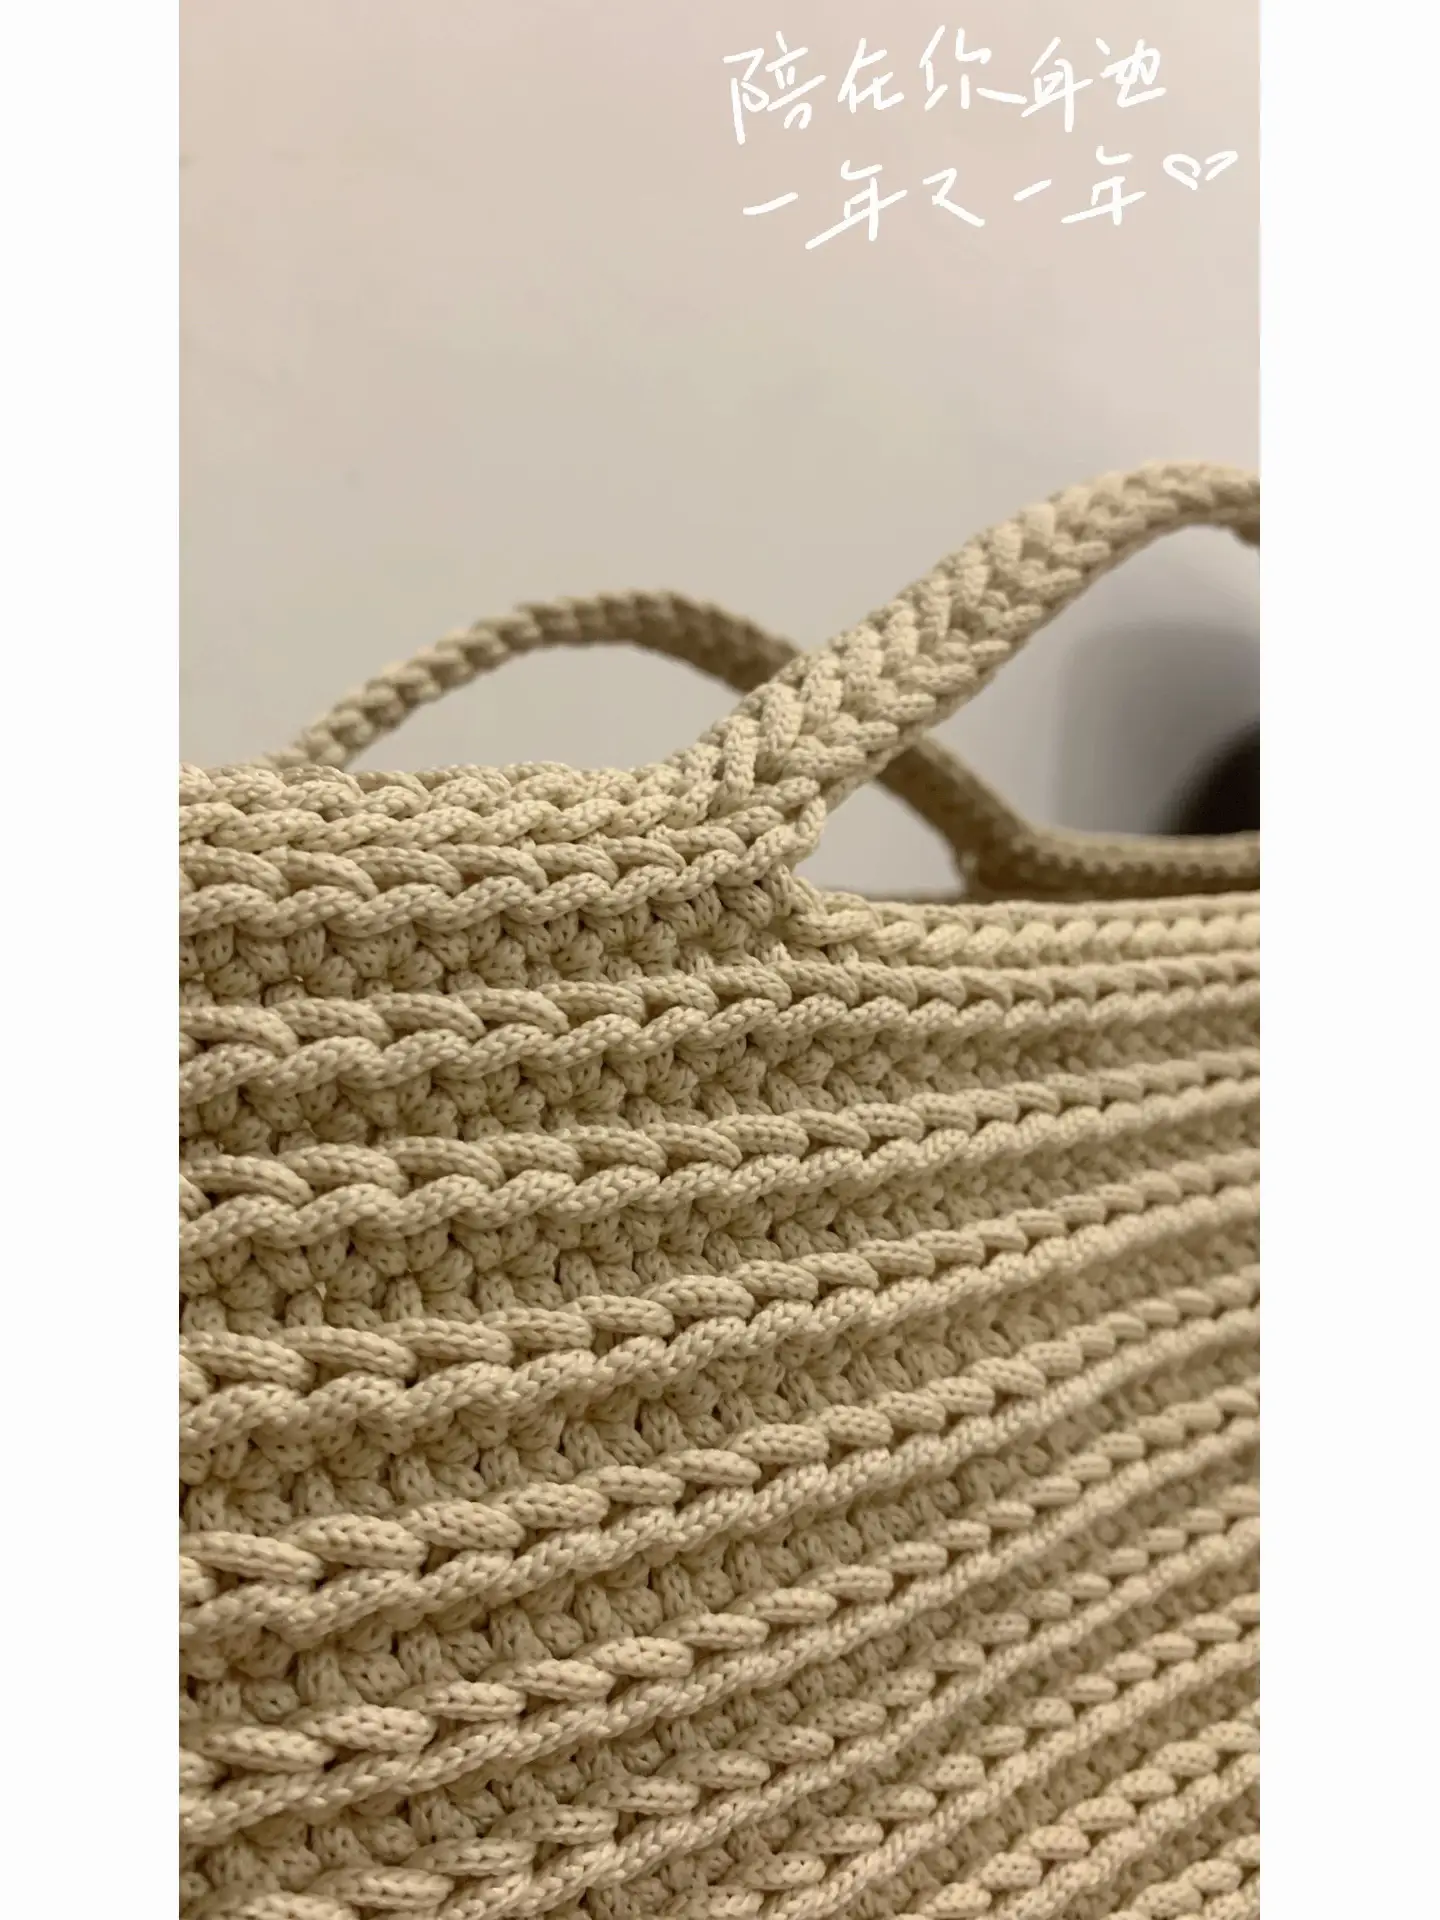 Crocheting bag - Success! 003, Gallery posted by Ng Wai Yan